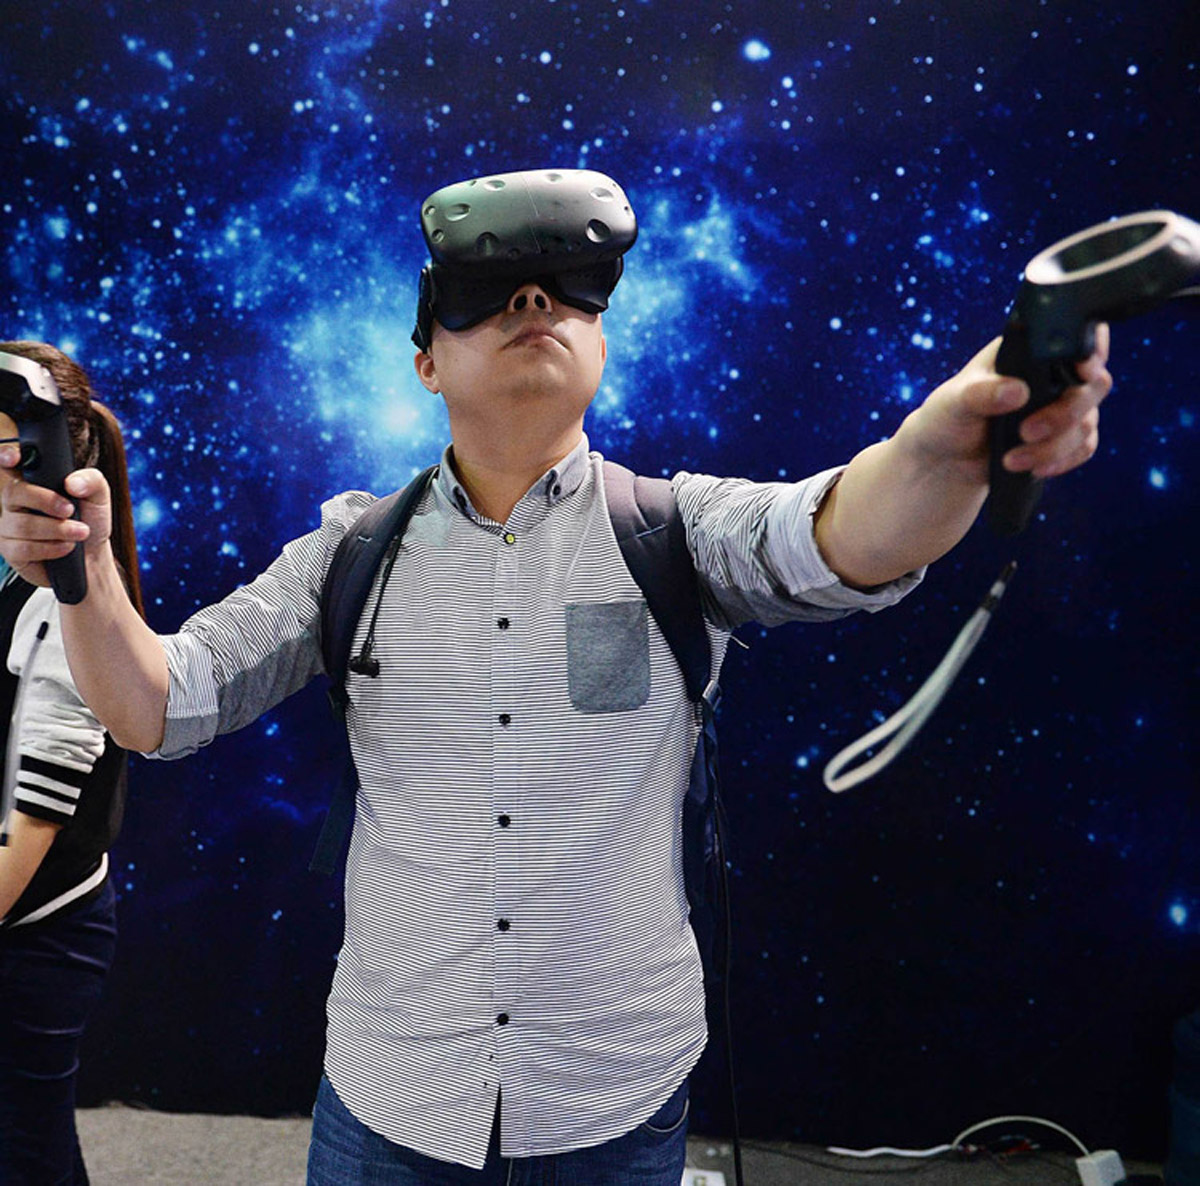 托克托校园安全VR虚拟现实体验馆